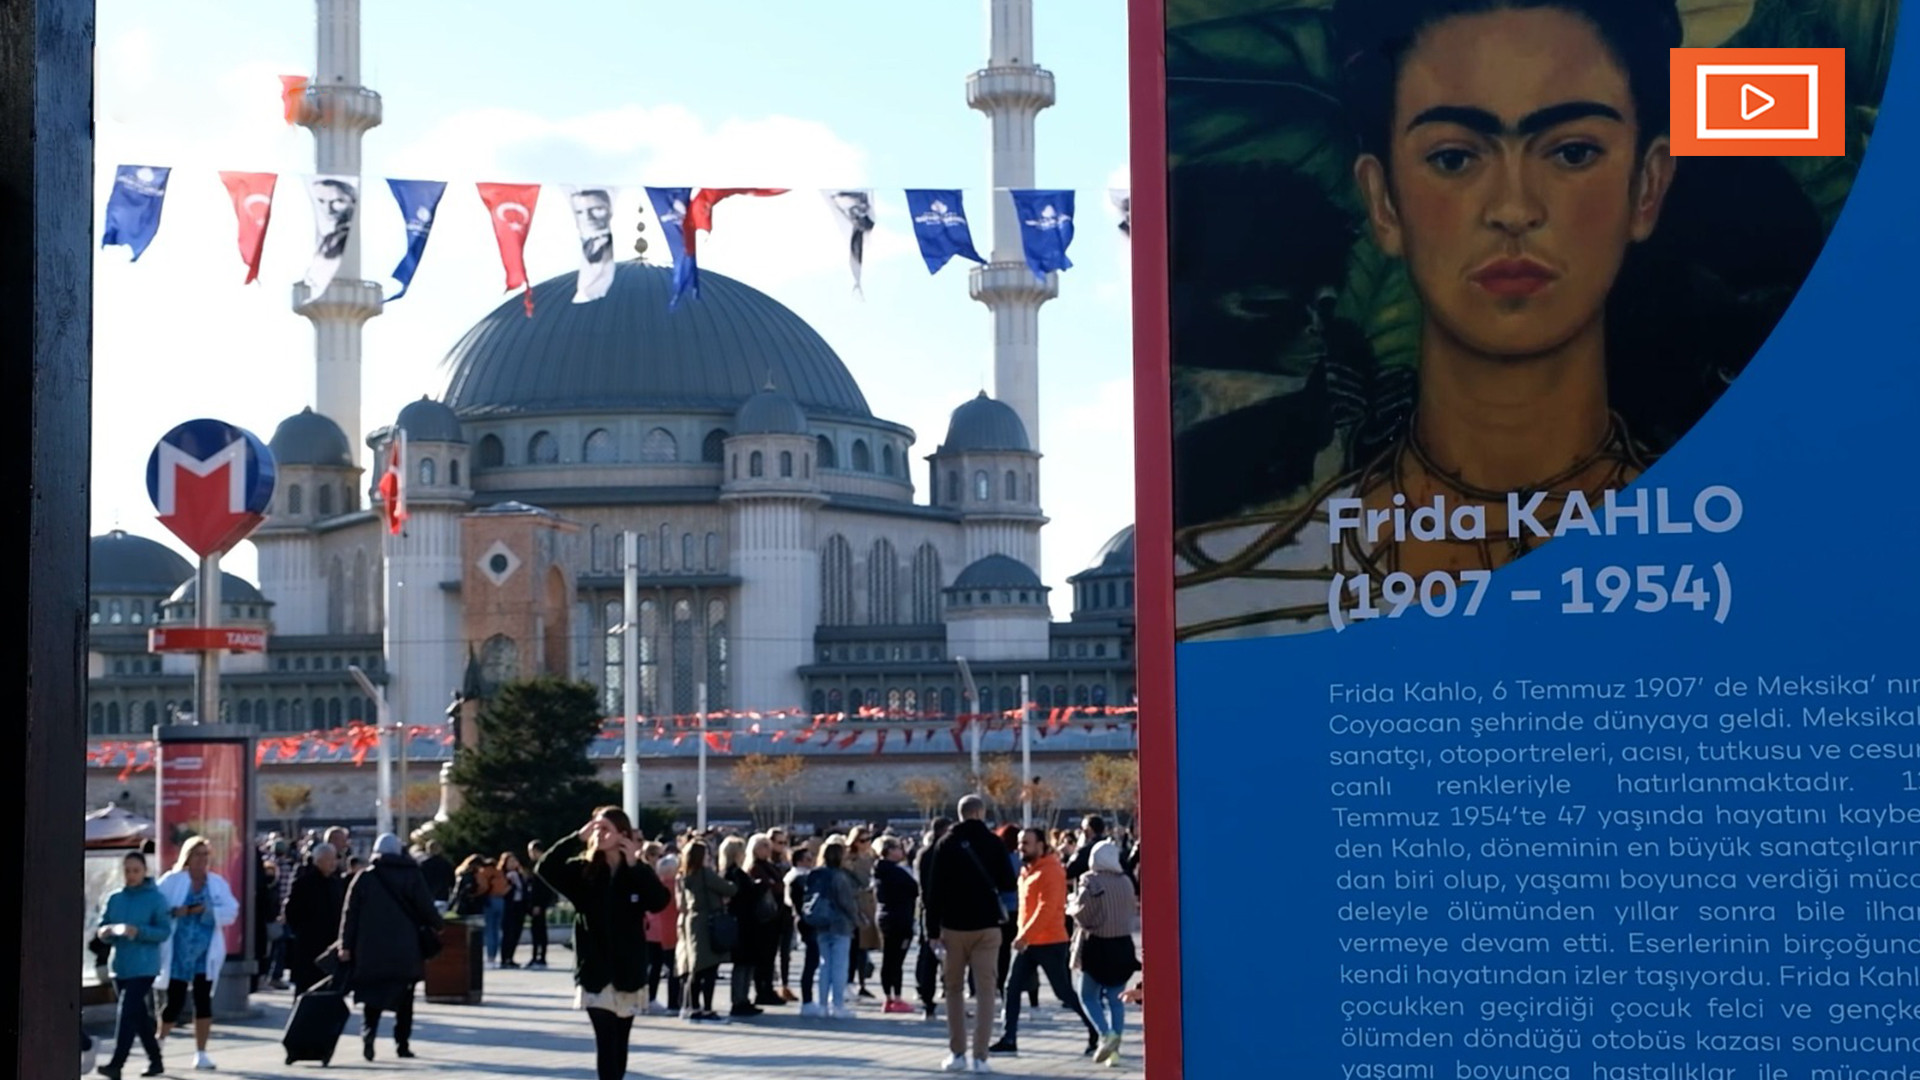 Beyoğlu Kültür Yolu Festivali: Meydana dikilmiş kartondan Kahlo başı